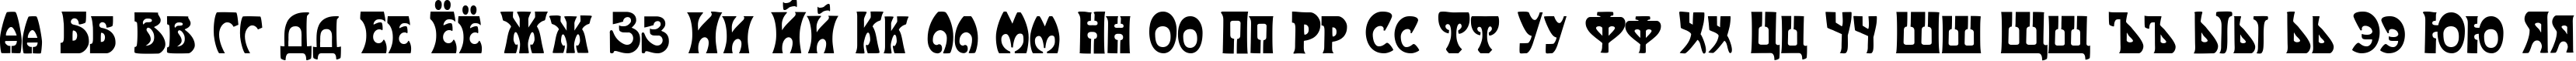 Пример написания русского алфавита шрифтом Art-Nouveau 1910